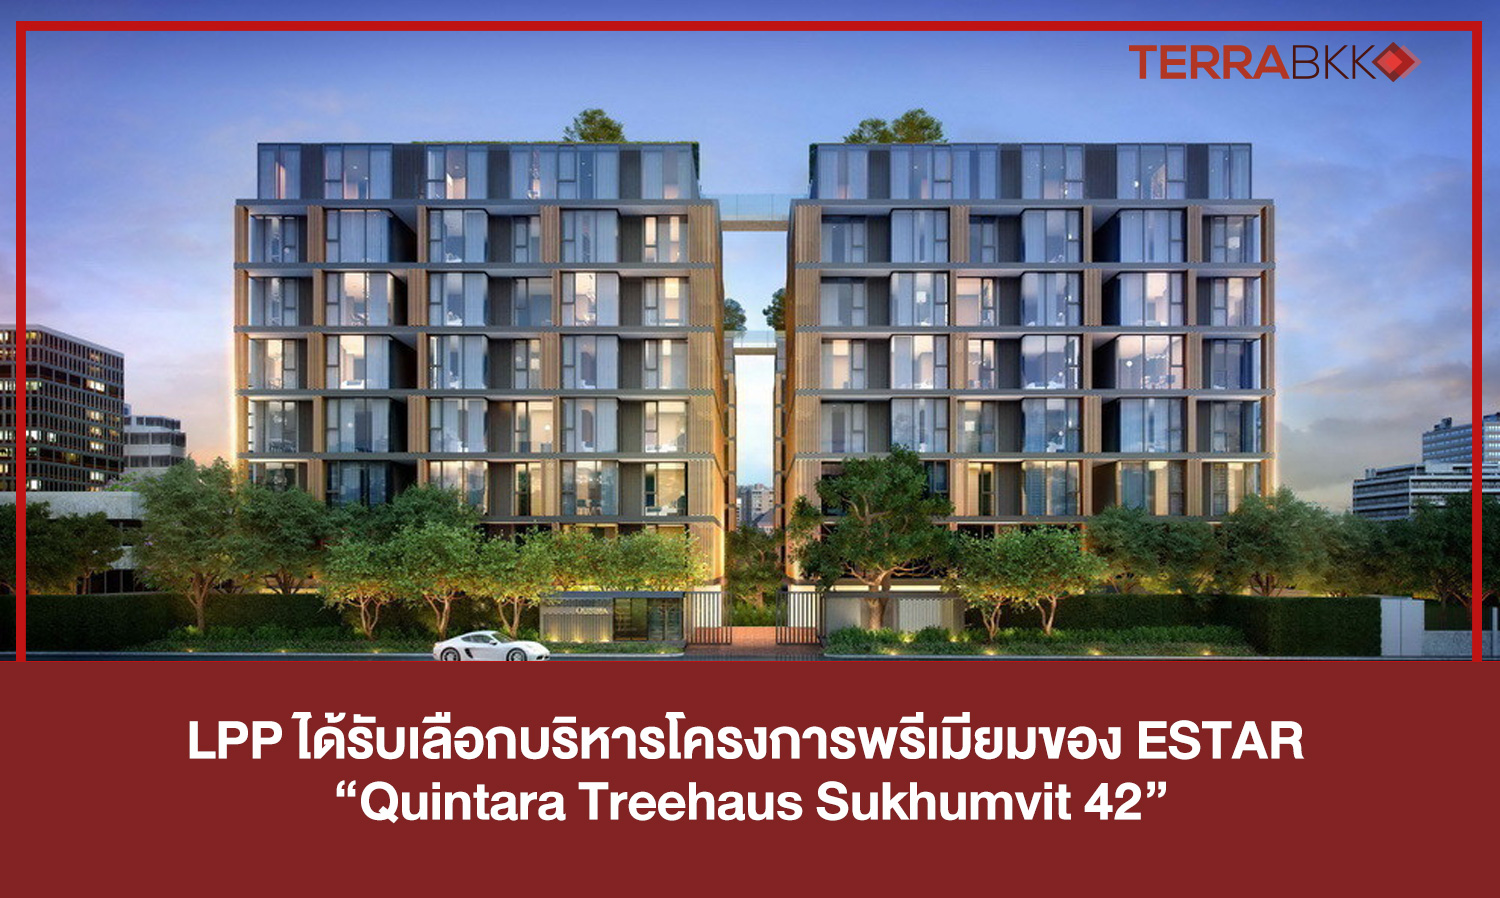 LPP ได้รับเลือกบริหารโครงการพรีเมียมของ ESTAR “Quintara Treehaus Sukhumvit 42”